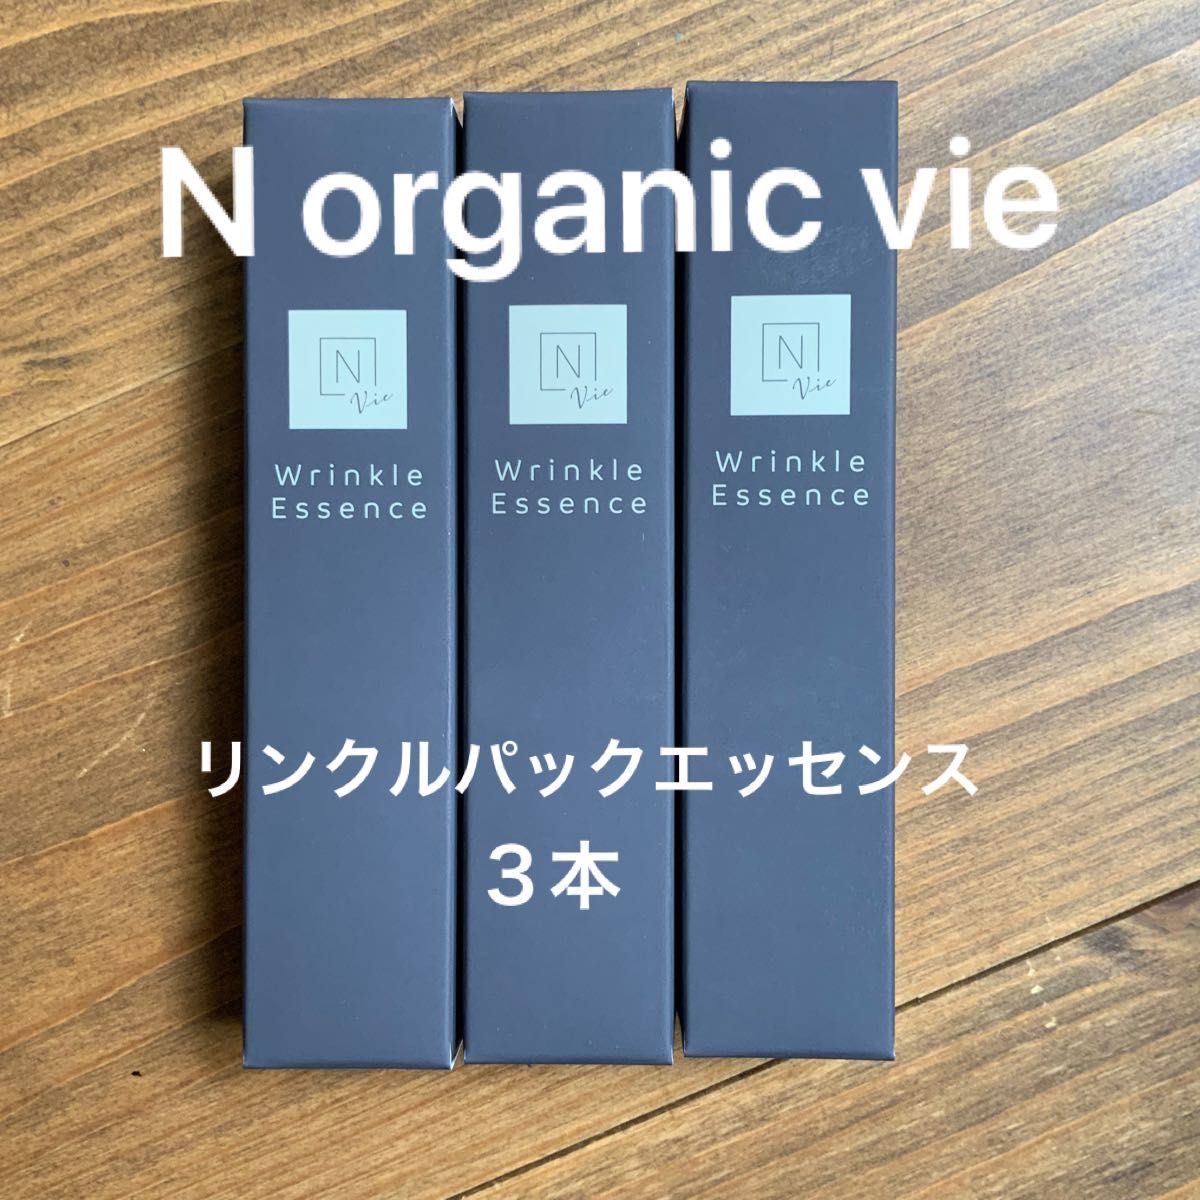 【期間限定お試し価格】スキンケア/基礎化粧品3本セット♪ エヌオーガニック N organic vie リンクルパック